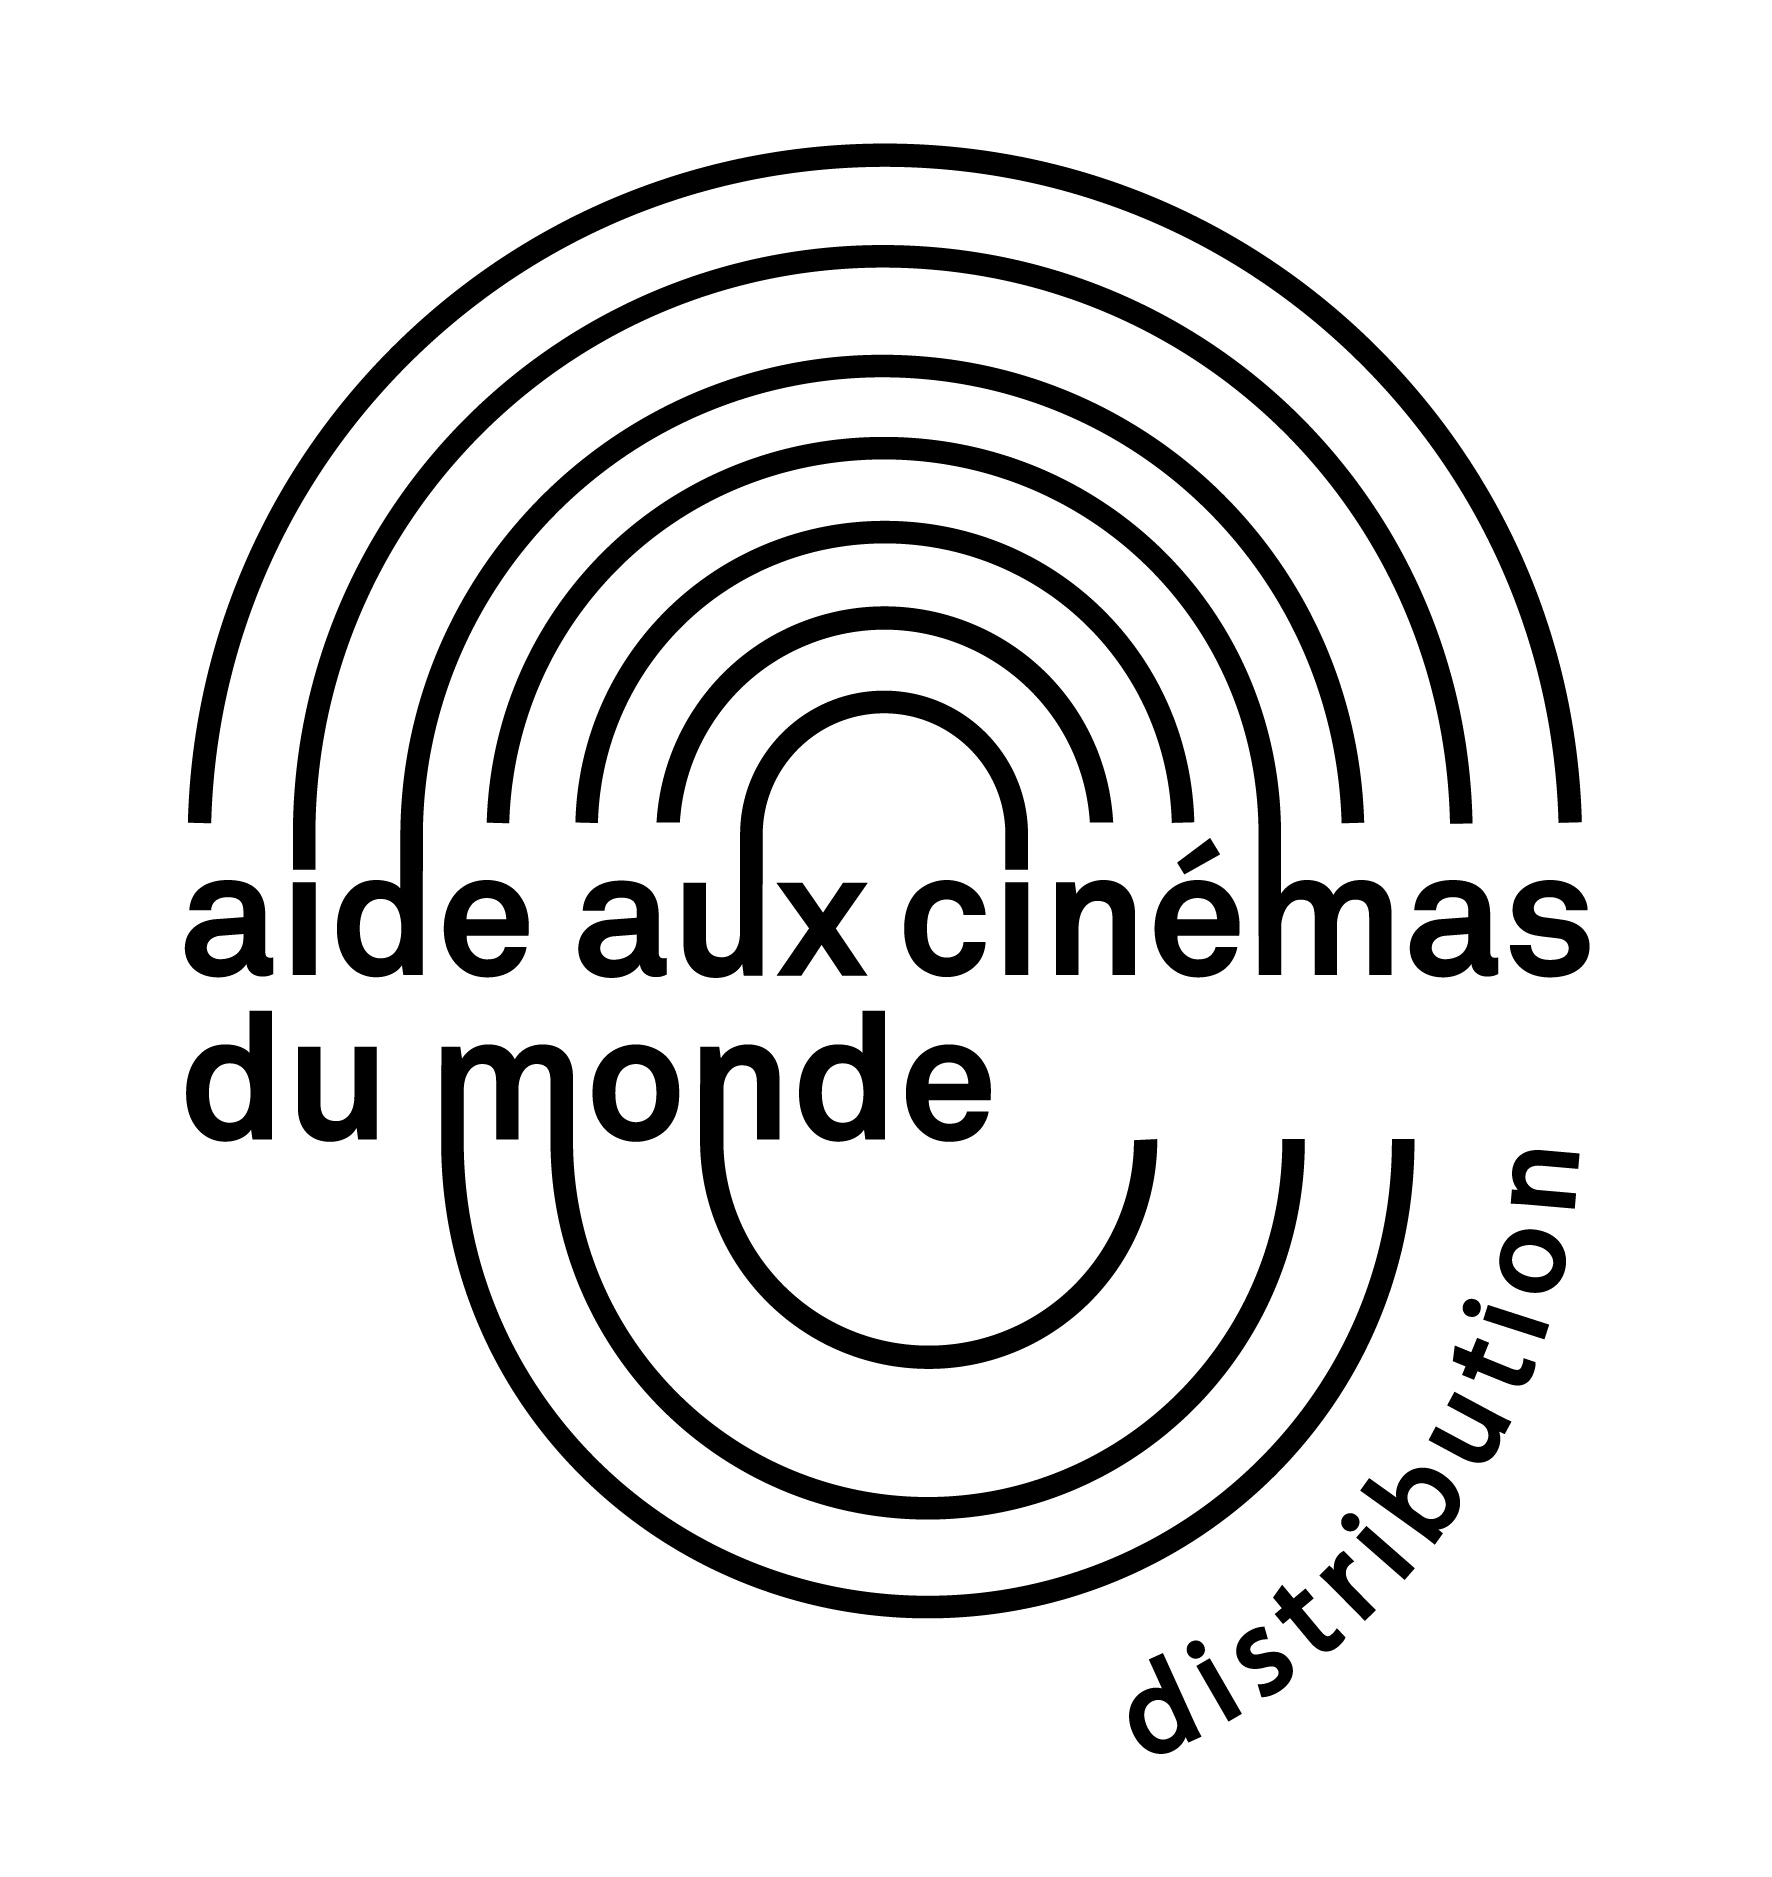 CNC_Logo_Aide aux cinemas Distribution_noir-01.jpg